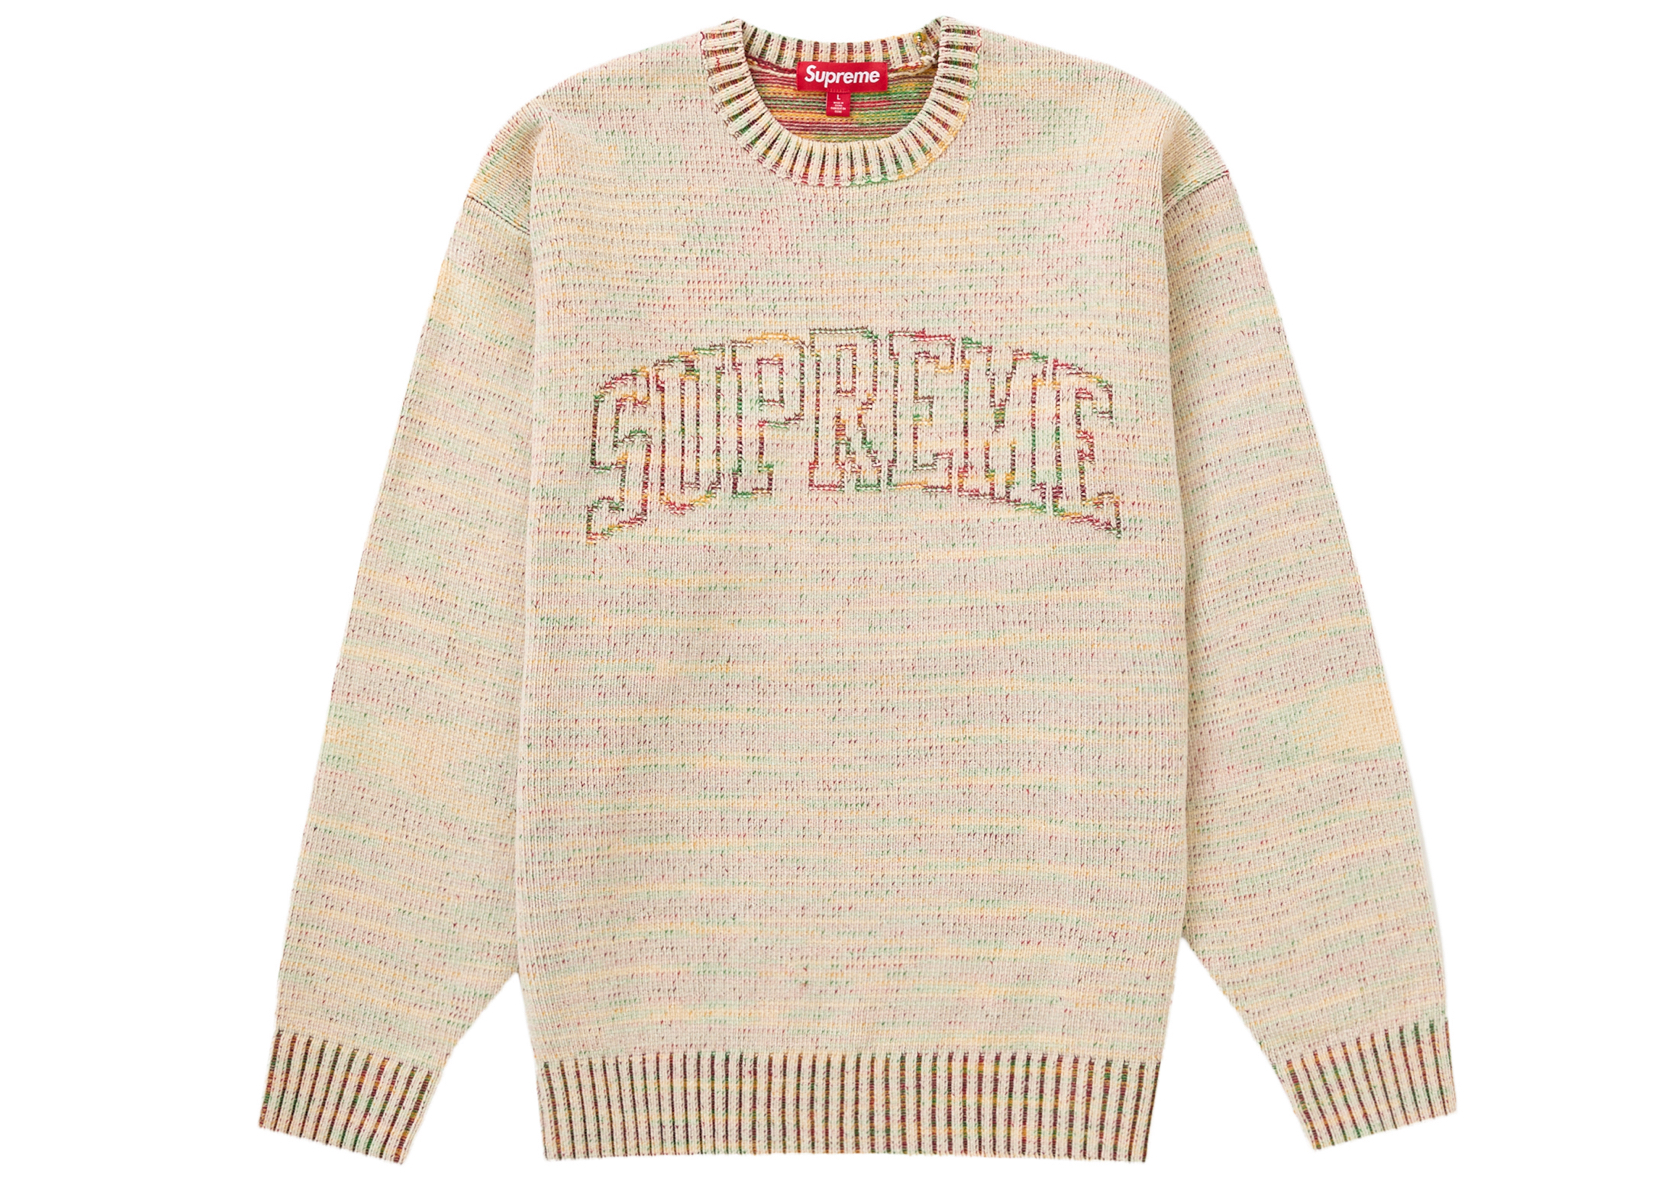 SupremeSupreme Contrast Arc Sweater White Lサイズ